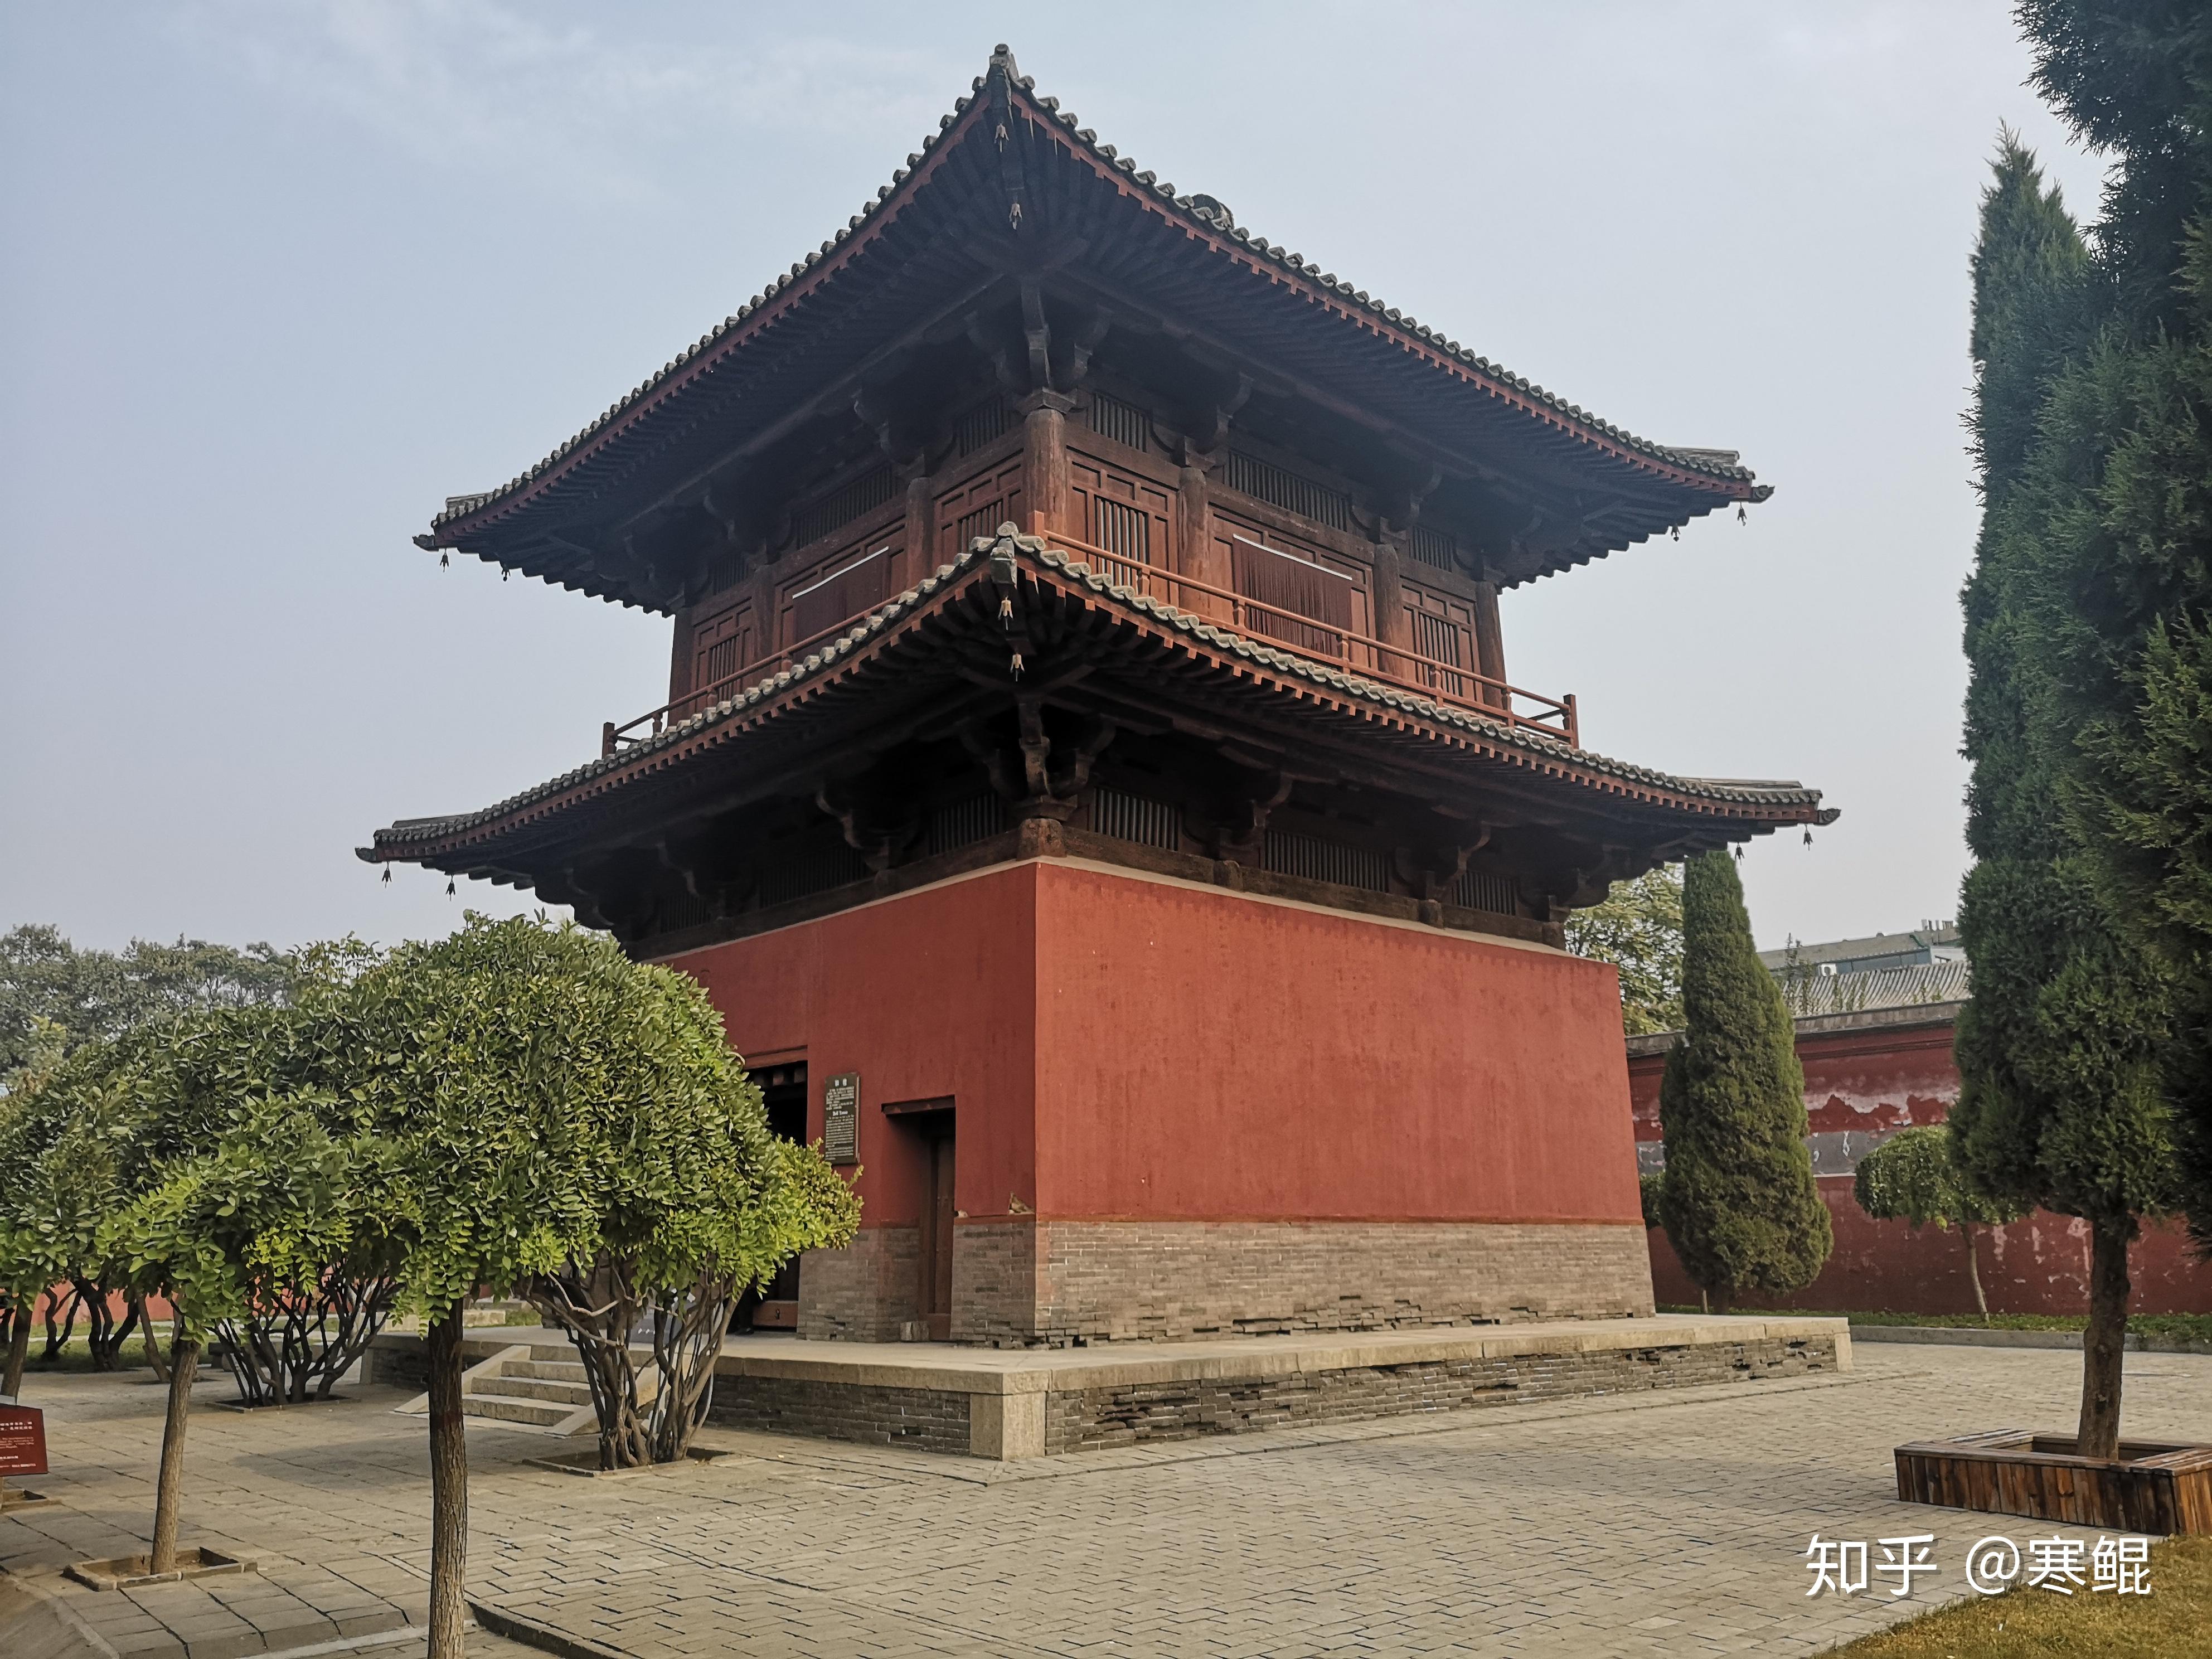 中国现存的唐朝建筑还有哪些? 